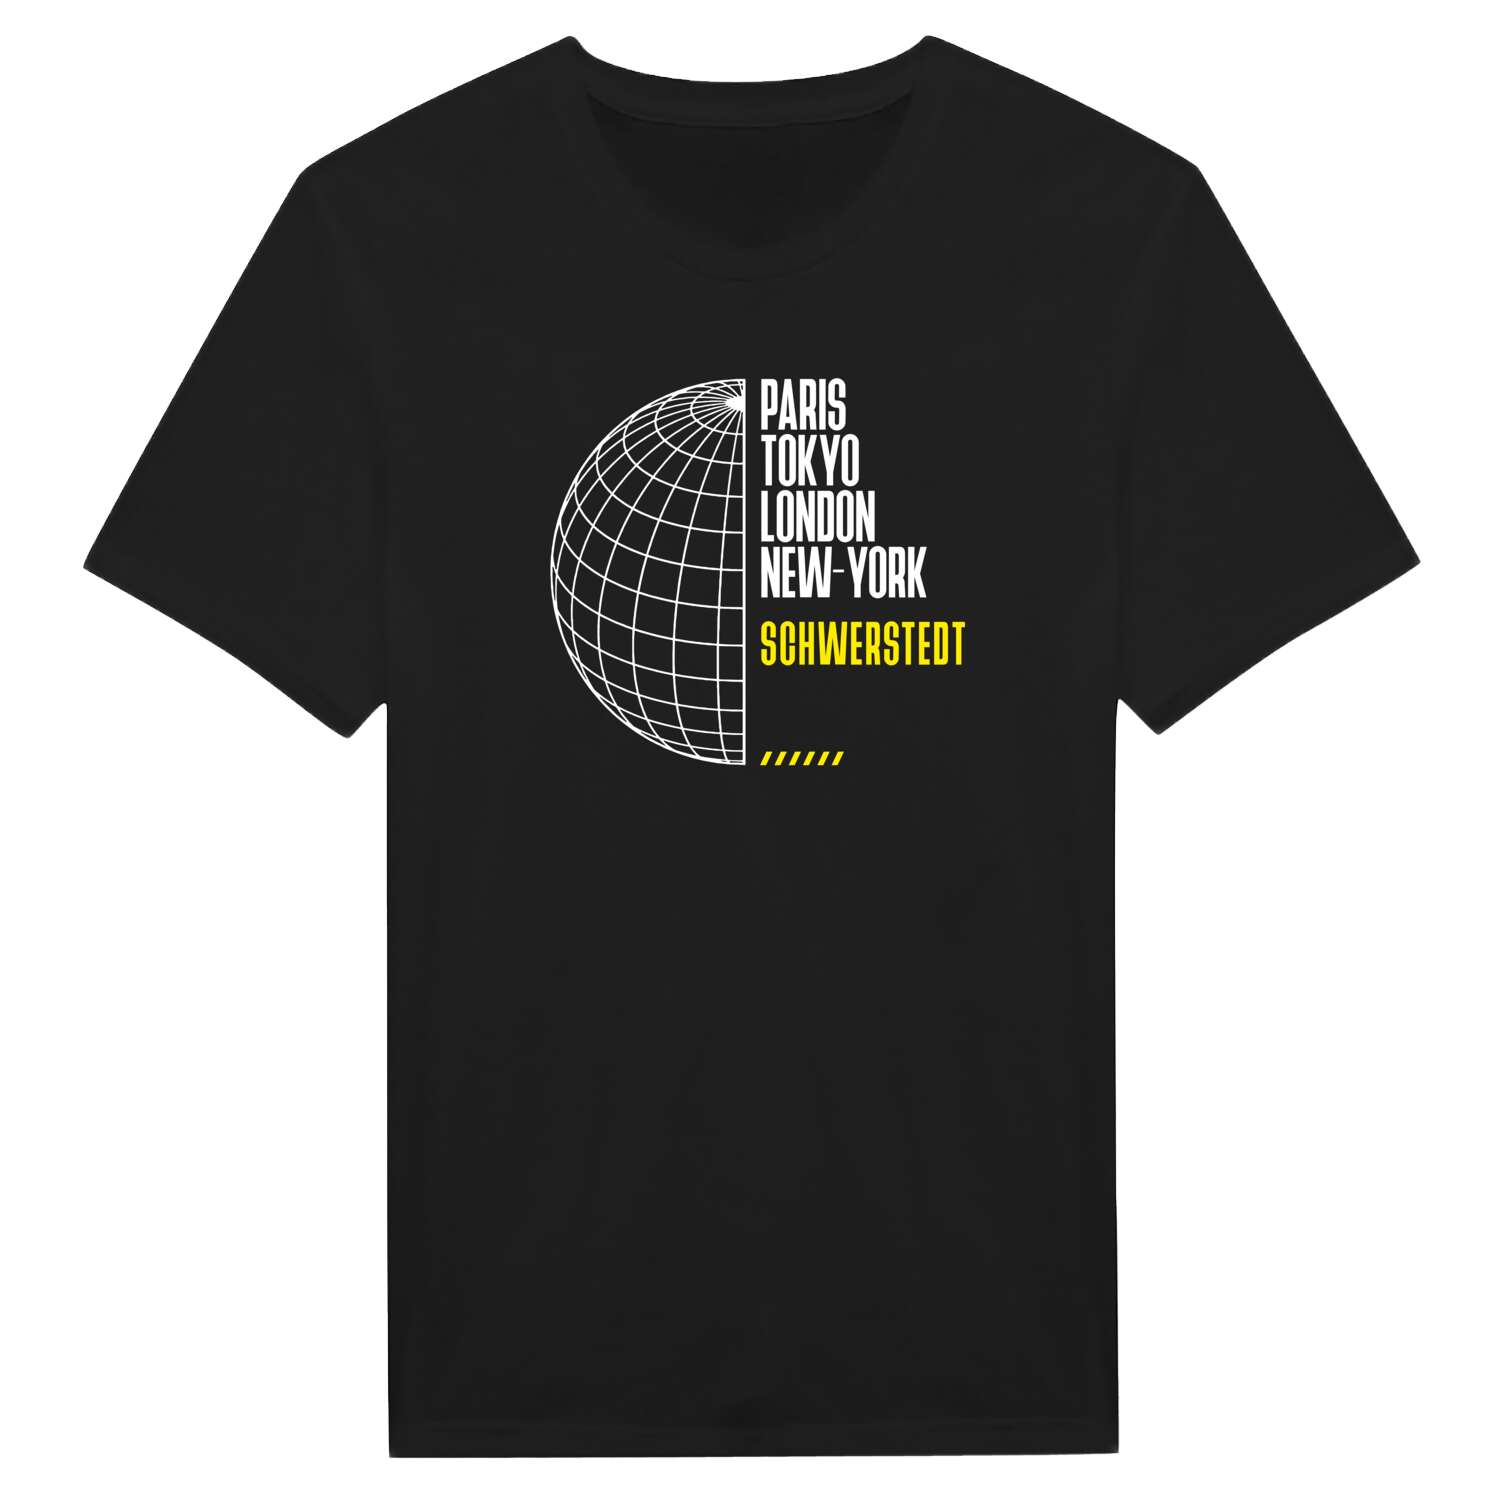 Schwerstedt T-Shirt »Paris Tokyo London«